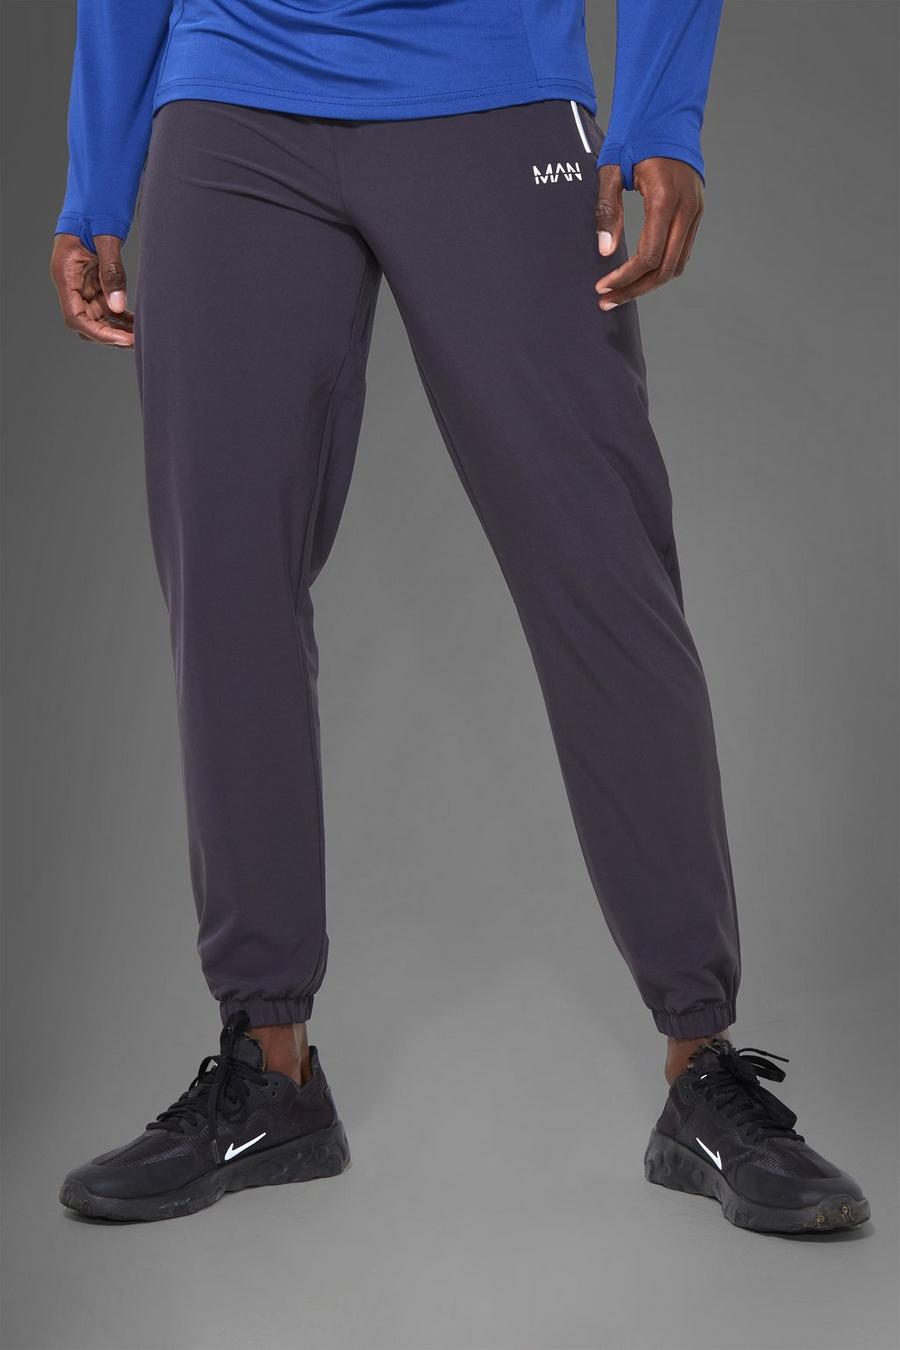 Pantaloni tuta Man Active Gym riflettenti, Charcoal gris